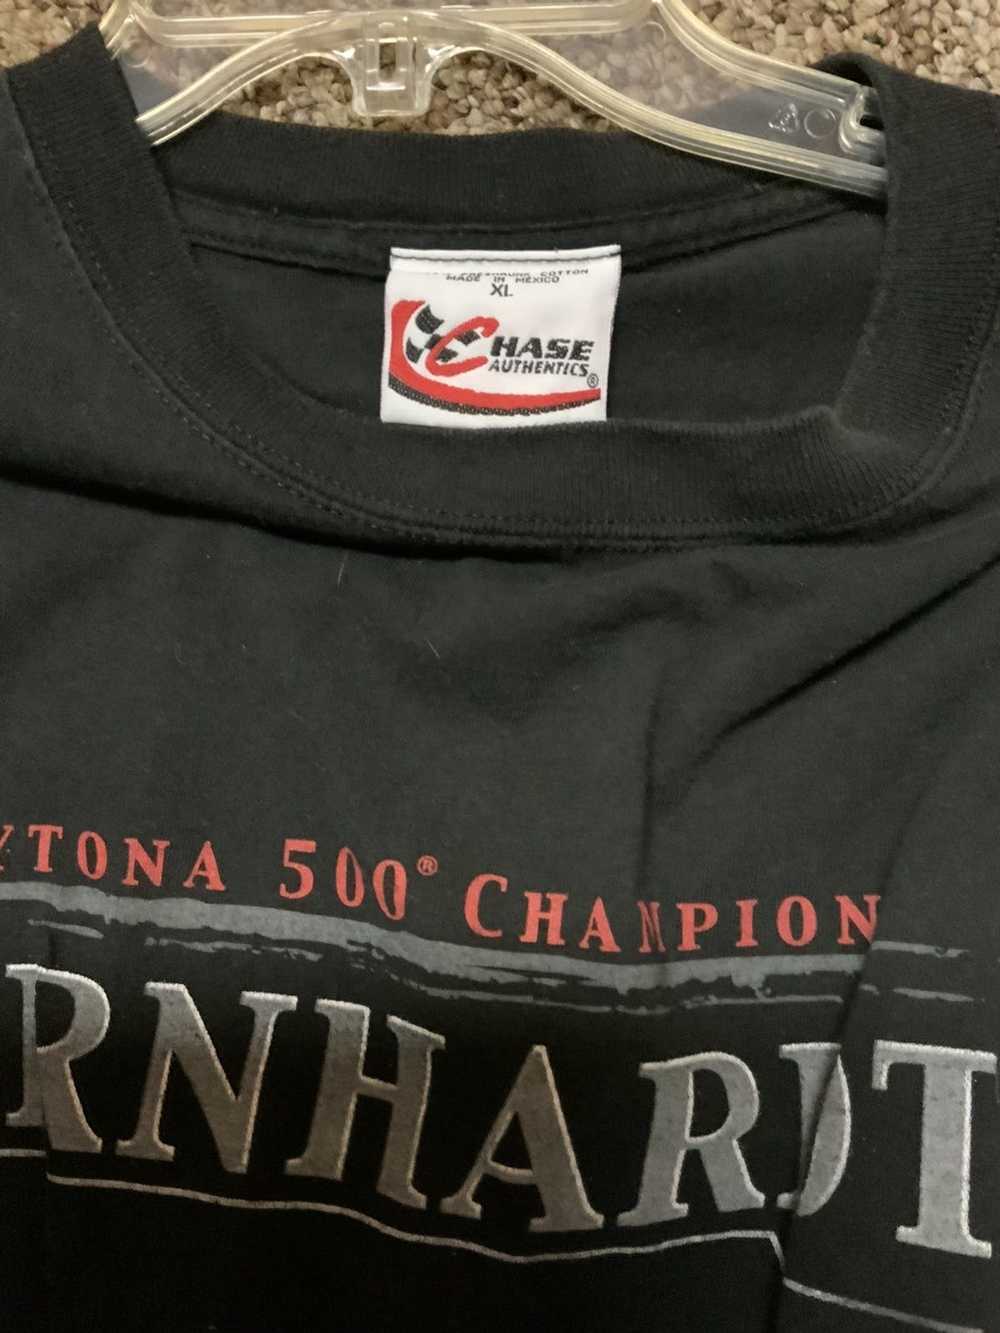 Chase Authentics Vintage Daytona 500 Campion shirt - image 3